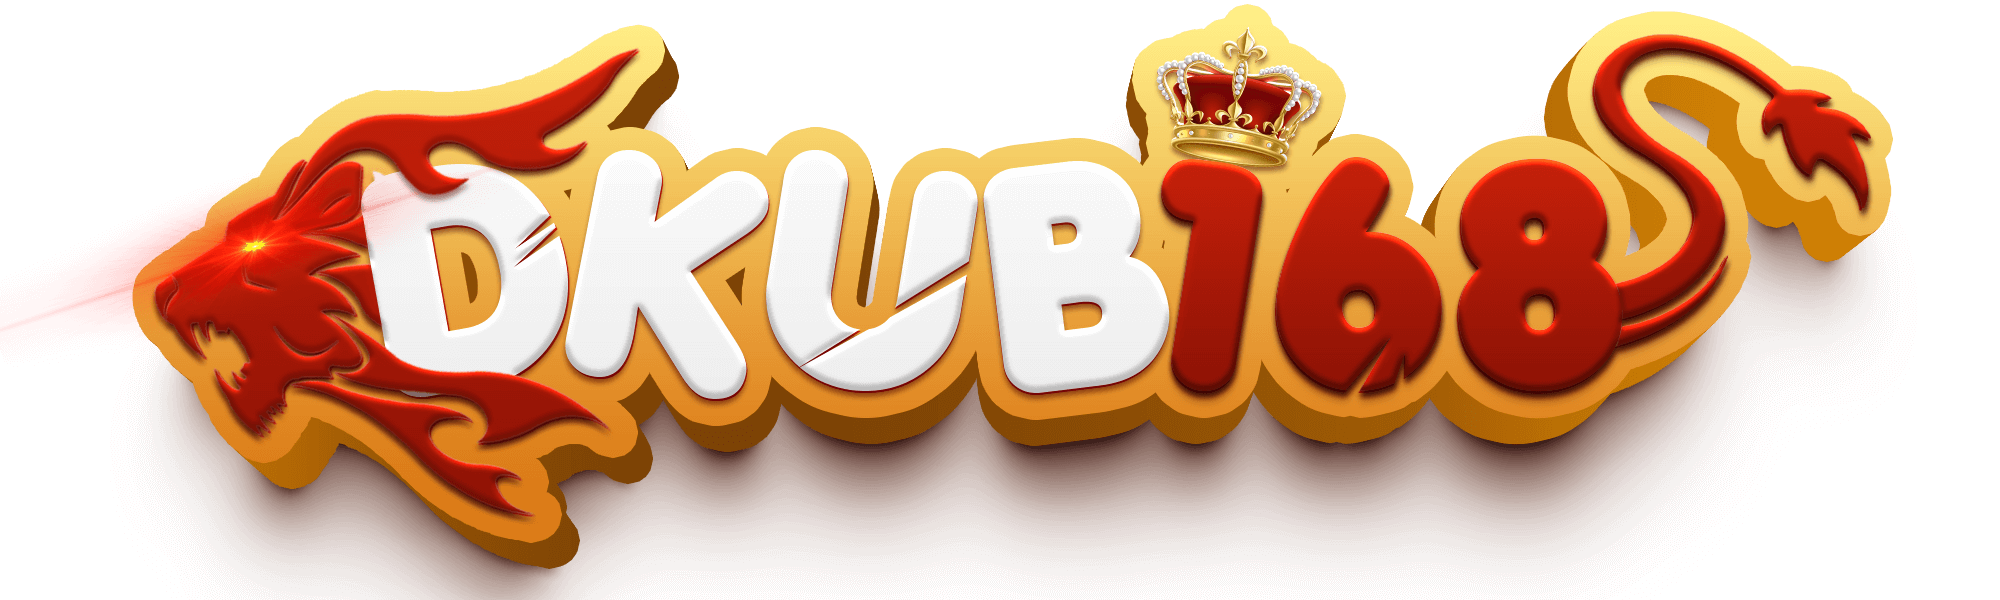 DKub168 Logo